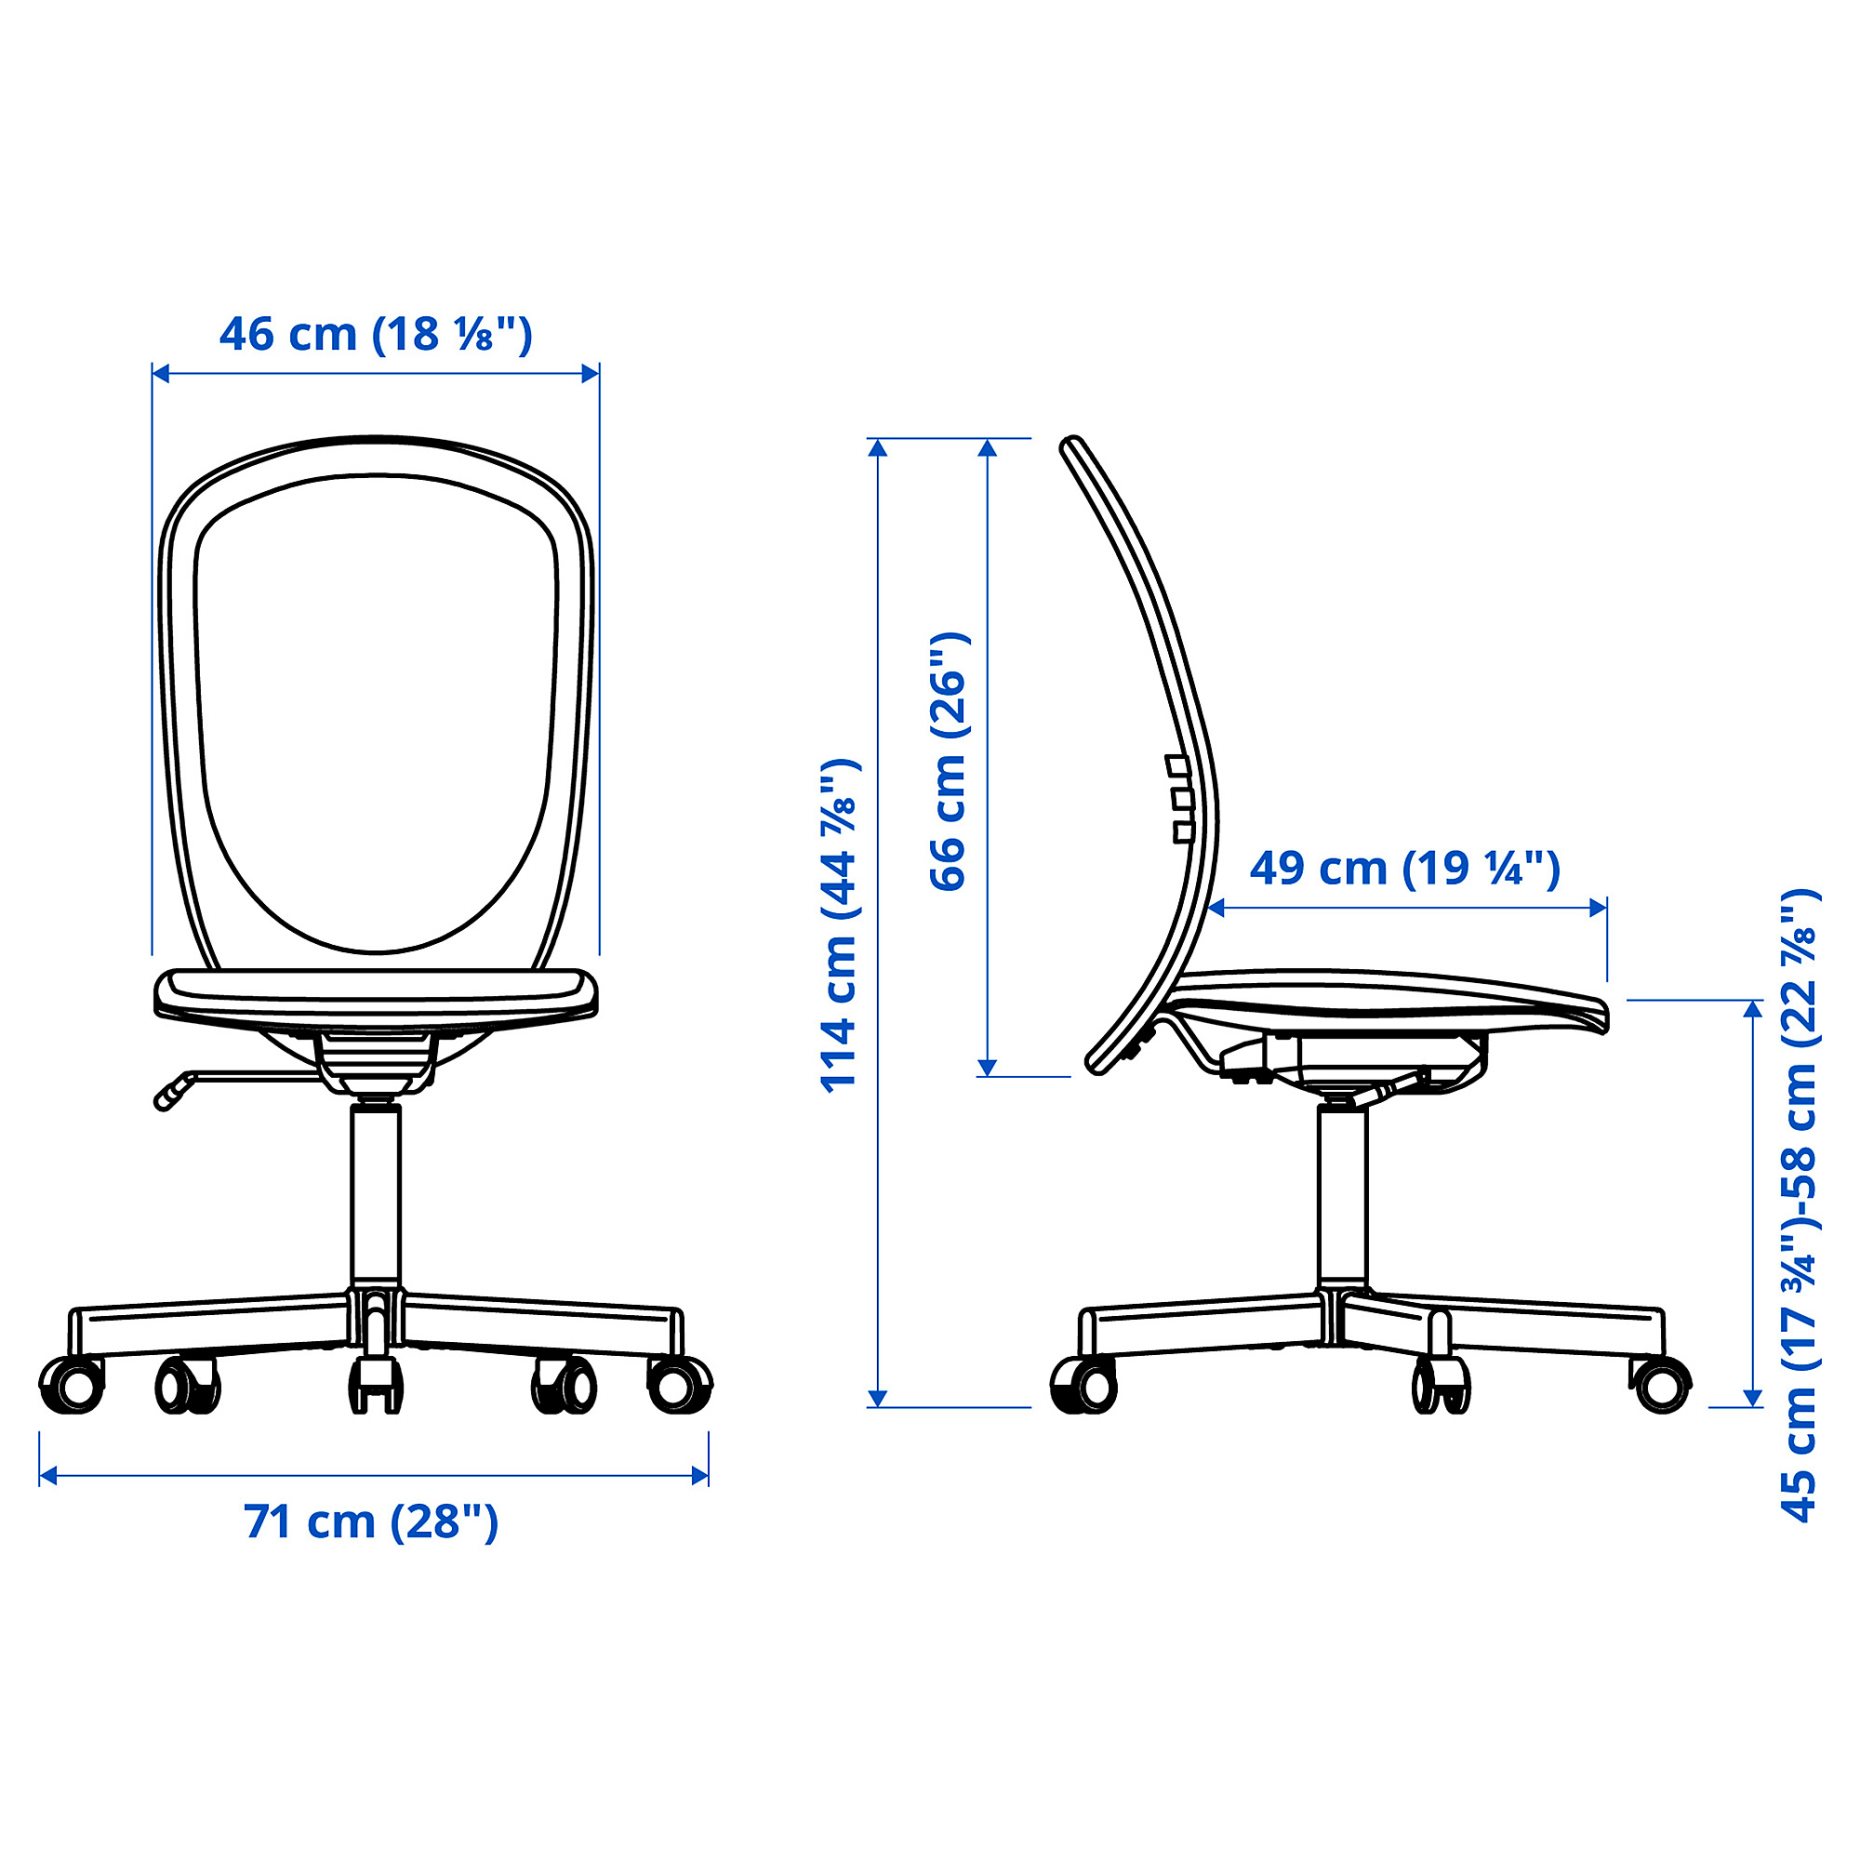 TROTTEN/FLINTAN/EKENABBEN, desk and storage combination with swivel chair, 794.368.29